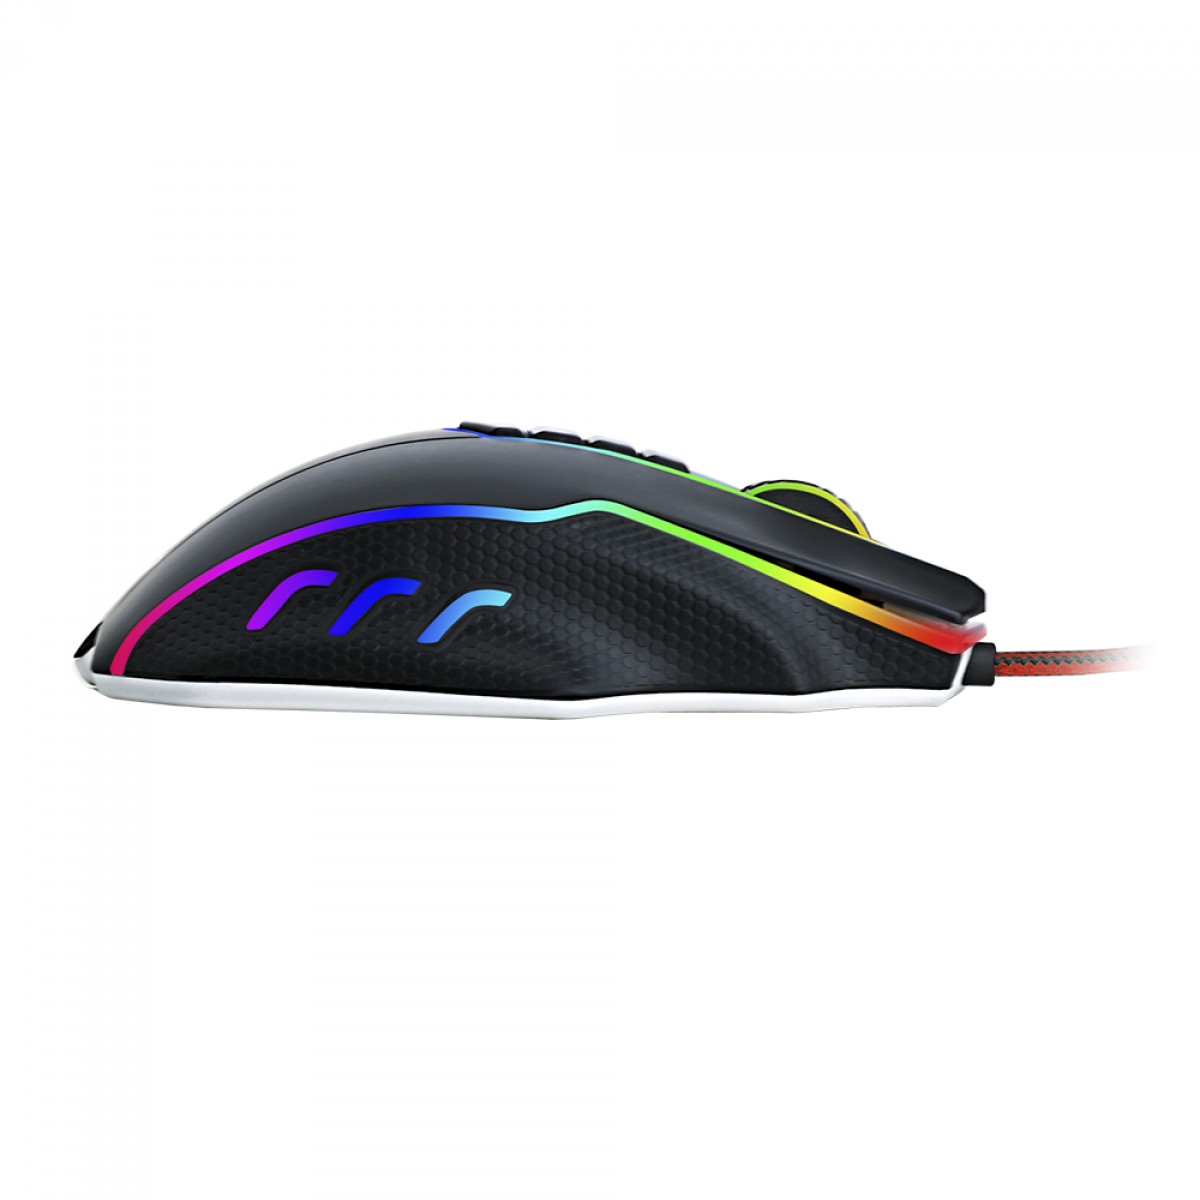 Mouse Gamer Redragon Titanoboa 2 Chroma, RGB, 24000 DPI, 10 Botões, Black, M802-RGB-1